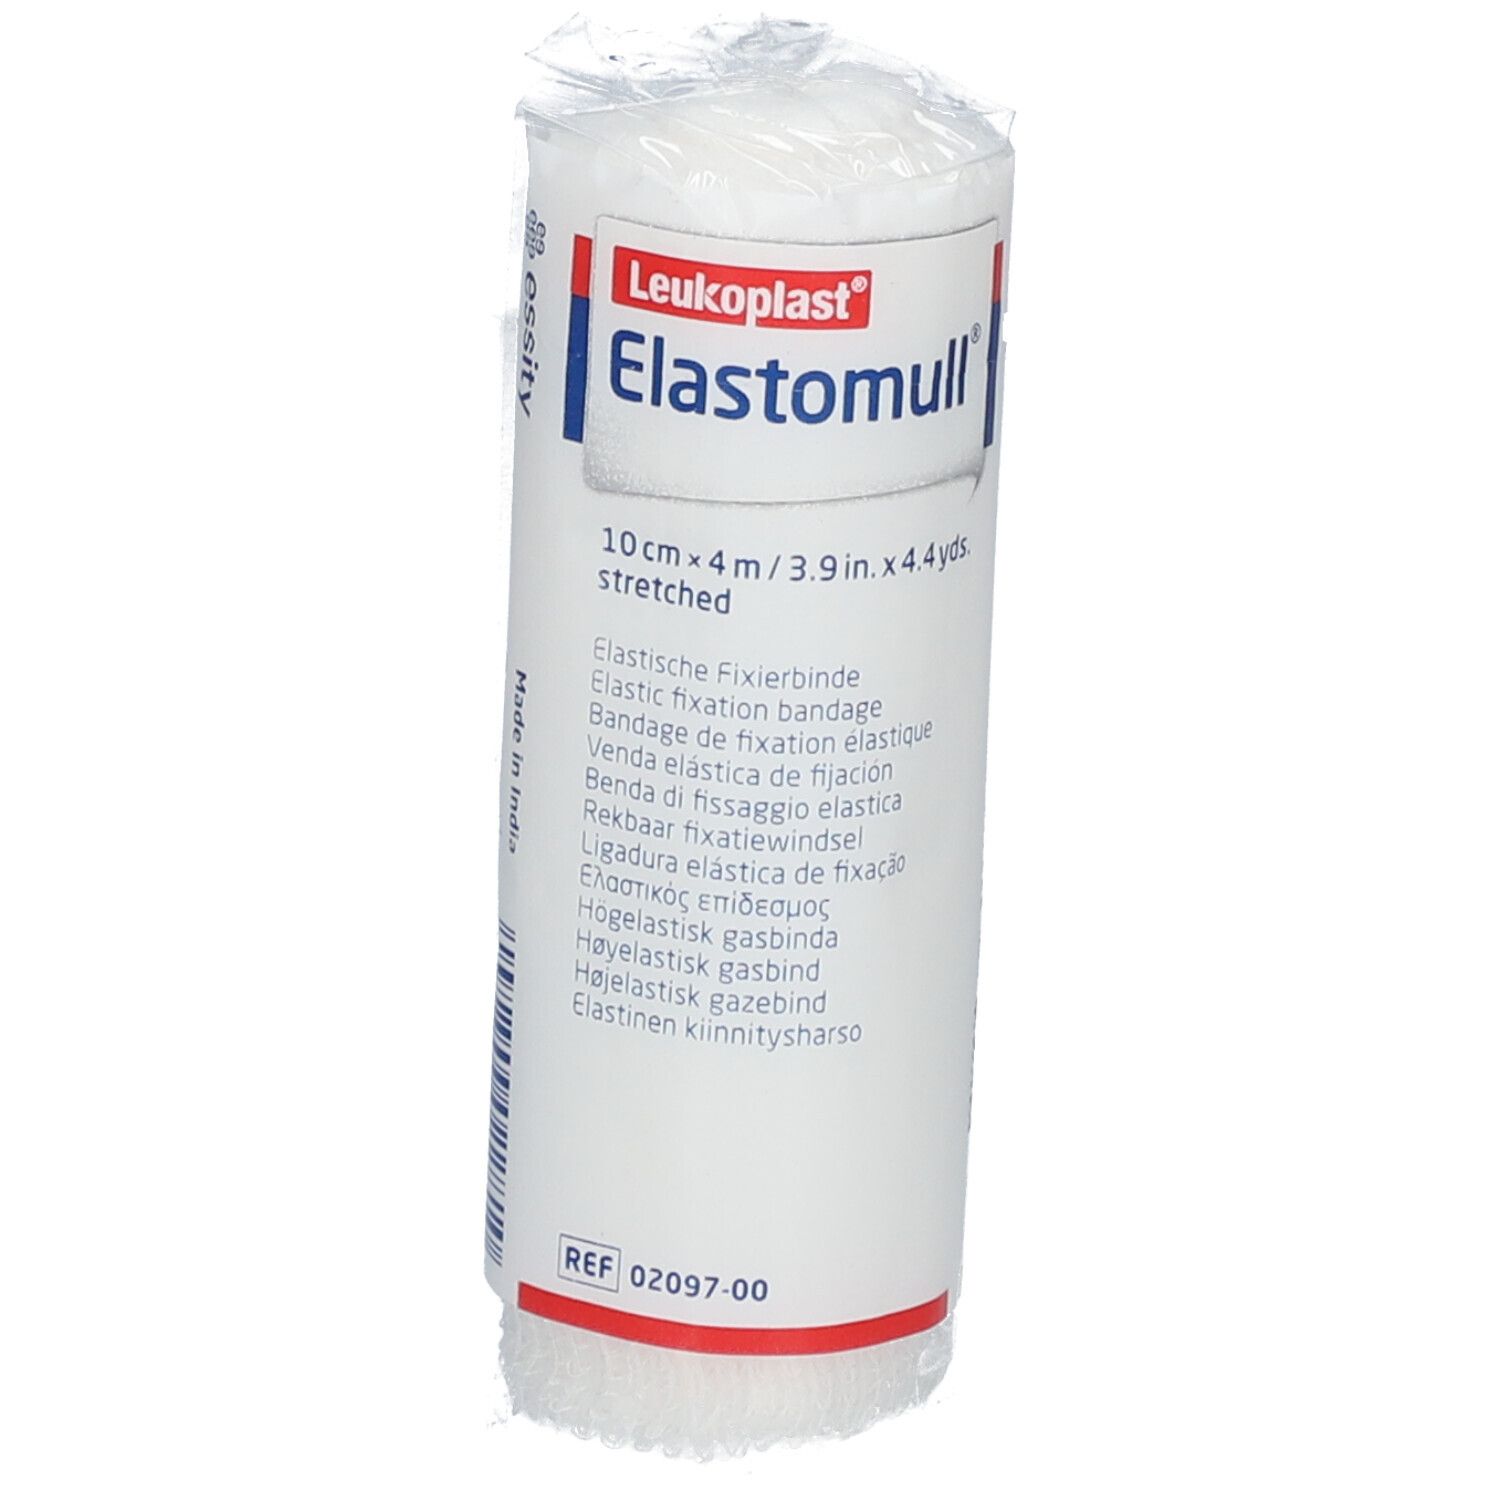 Elastomull® elastische Fixierbinde 4m x 10cm in Polypropylen